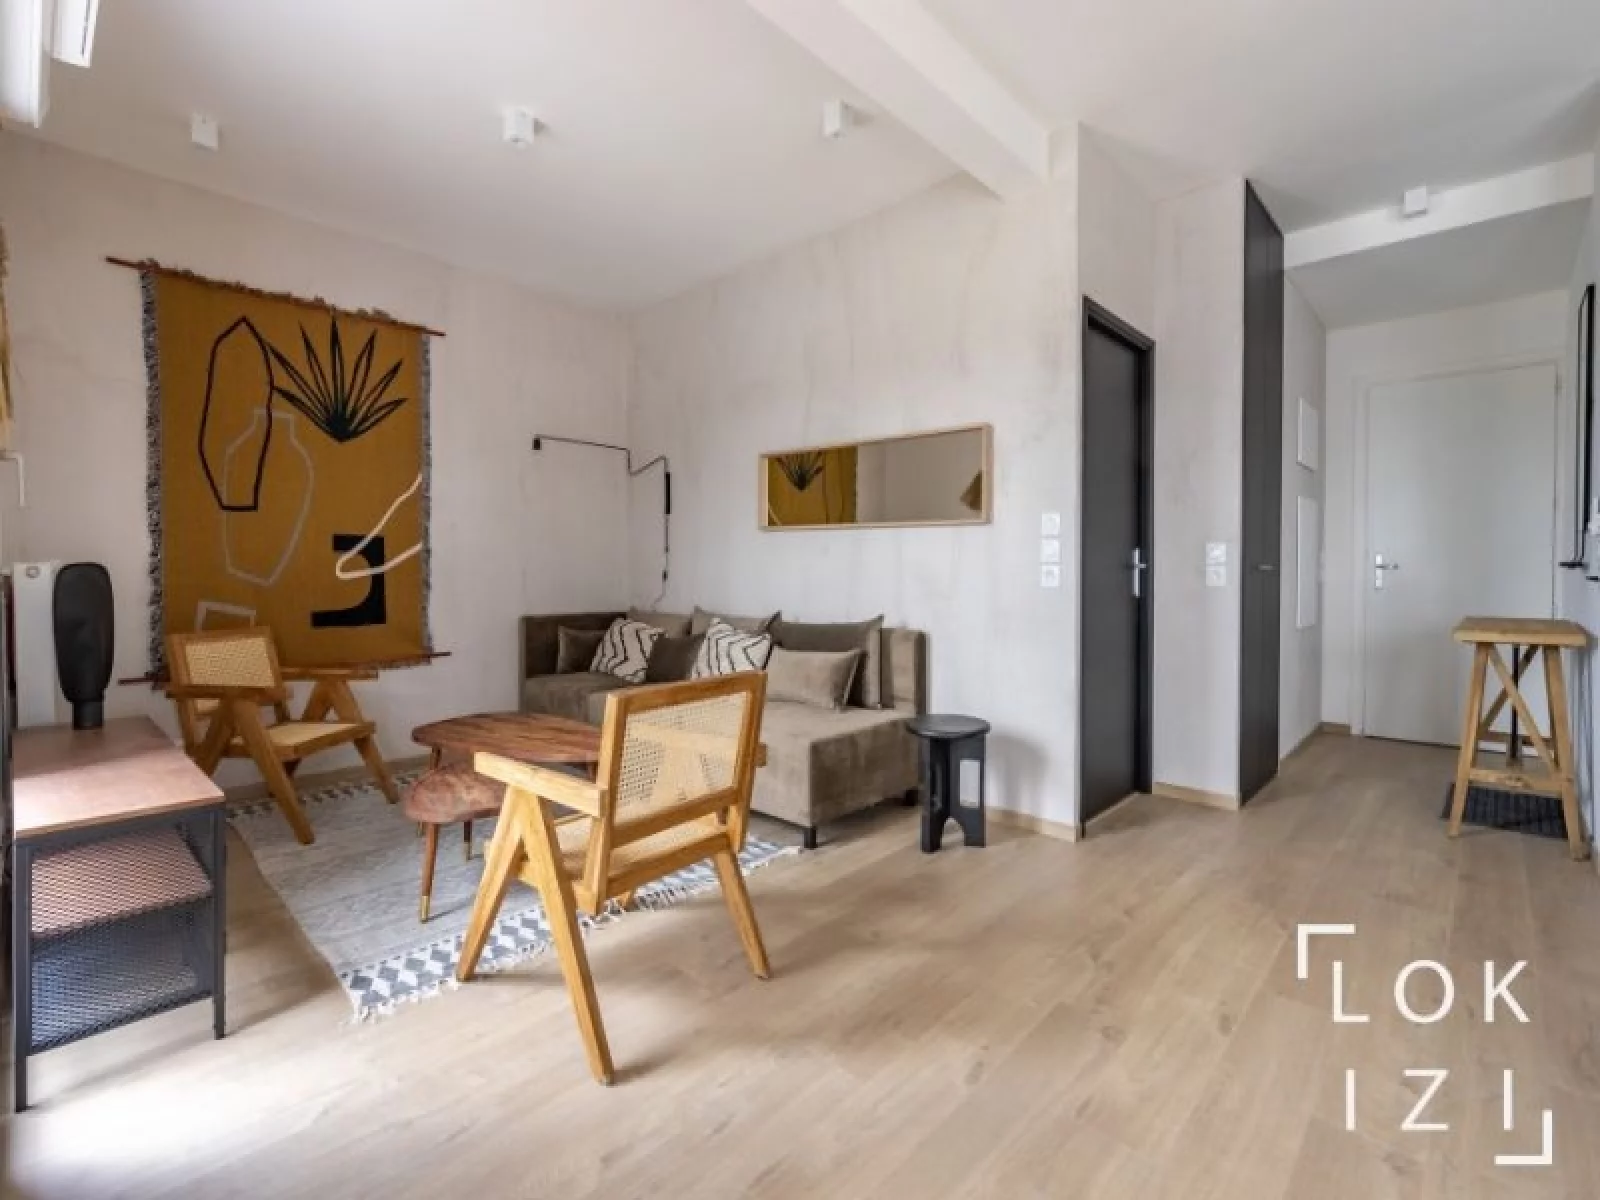 Location appartement meublé 4 pièces 94m² (Bordeaux - Belcier)